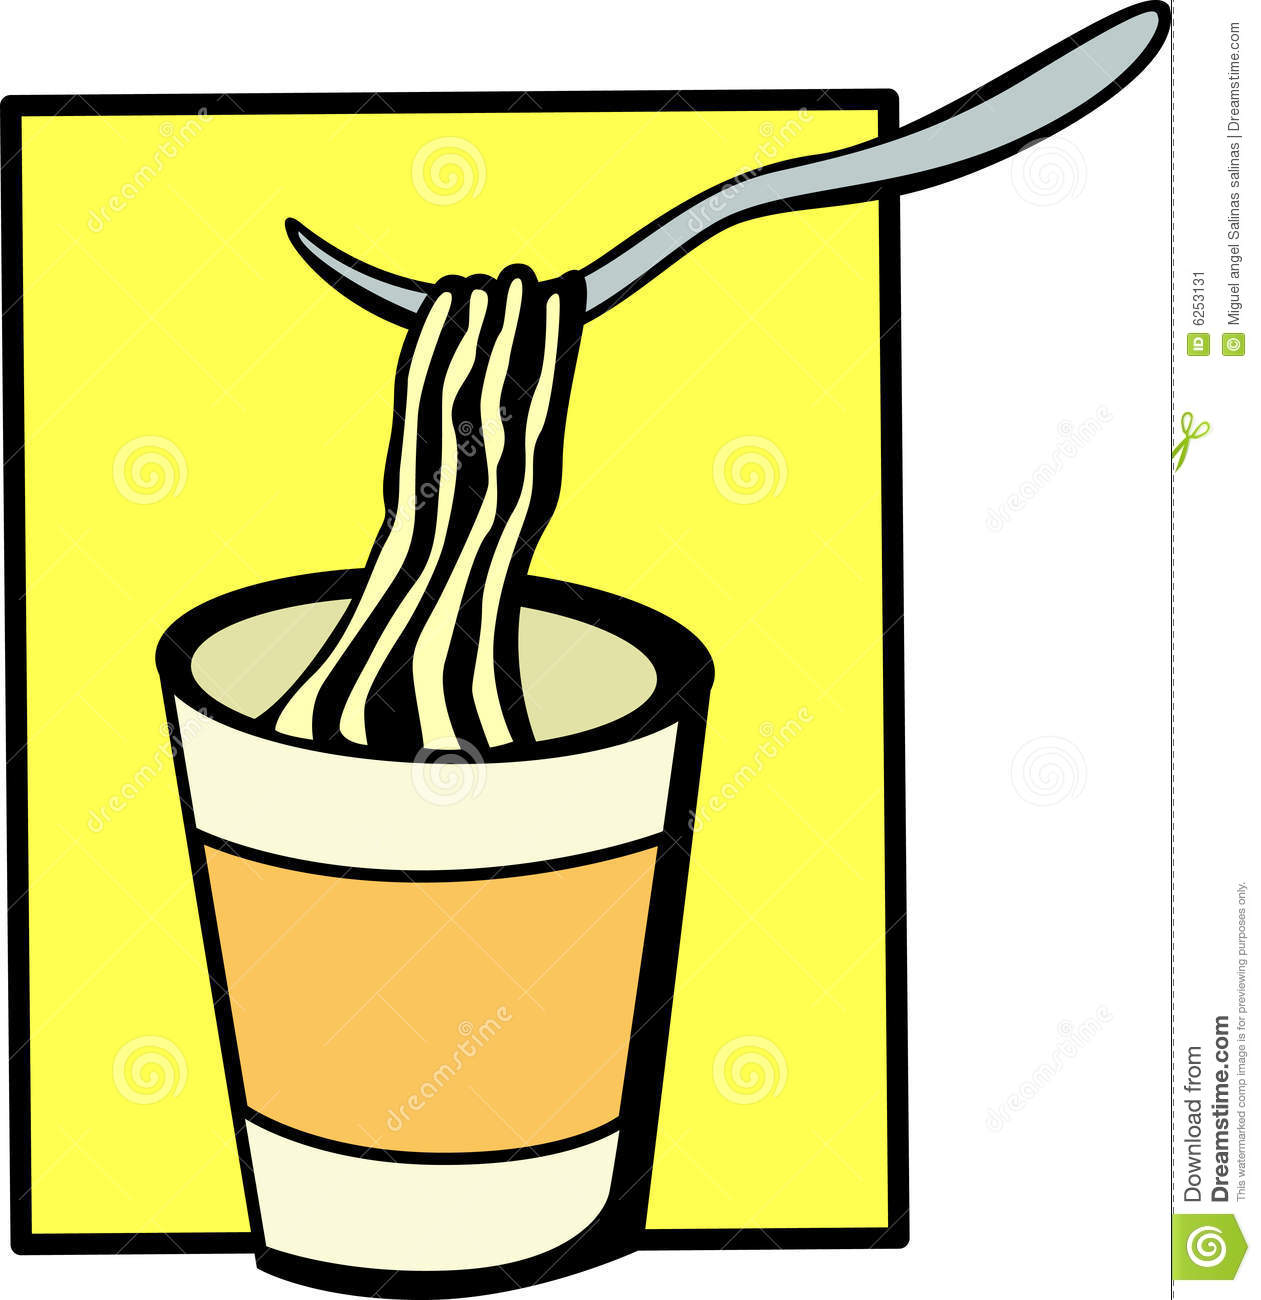 noodle clipart cup noodle